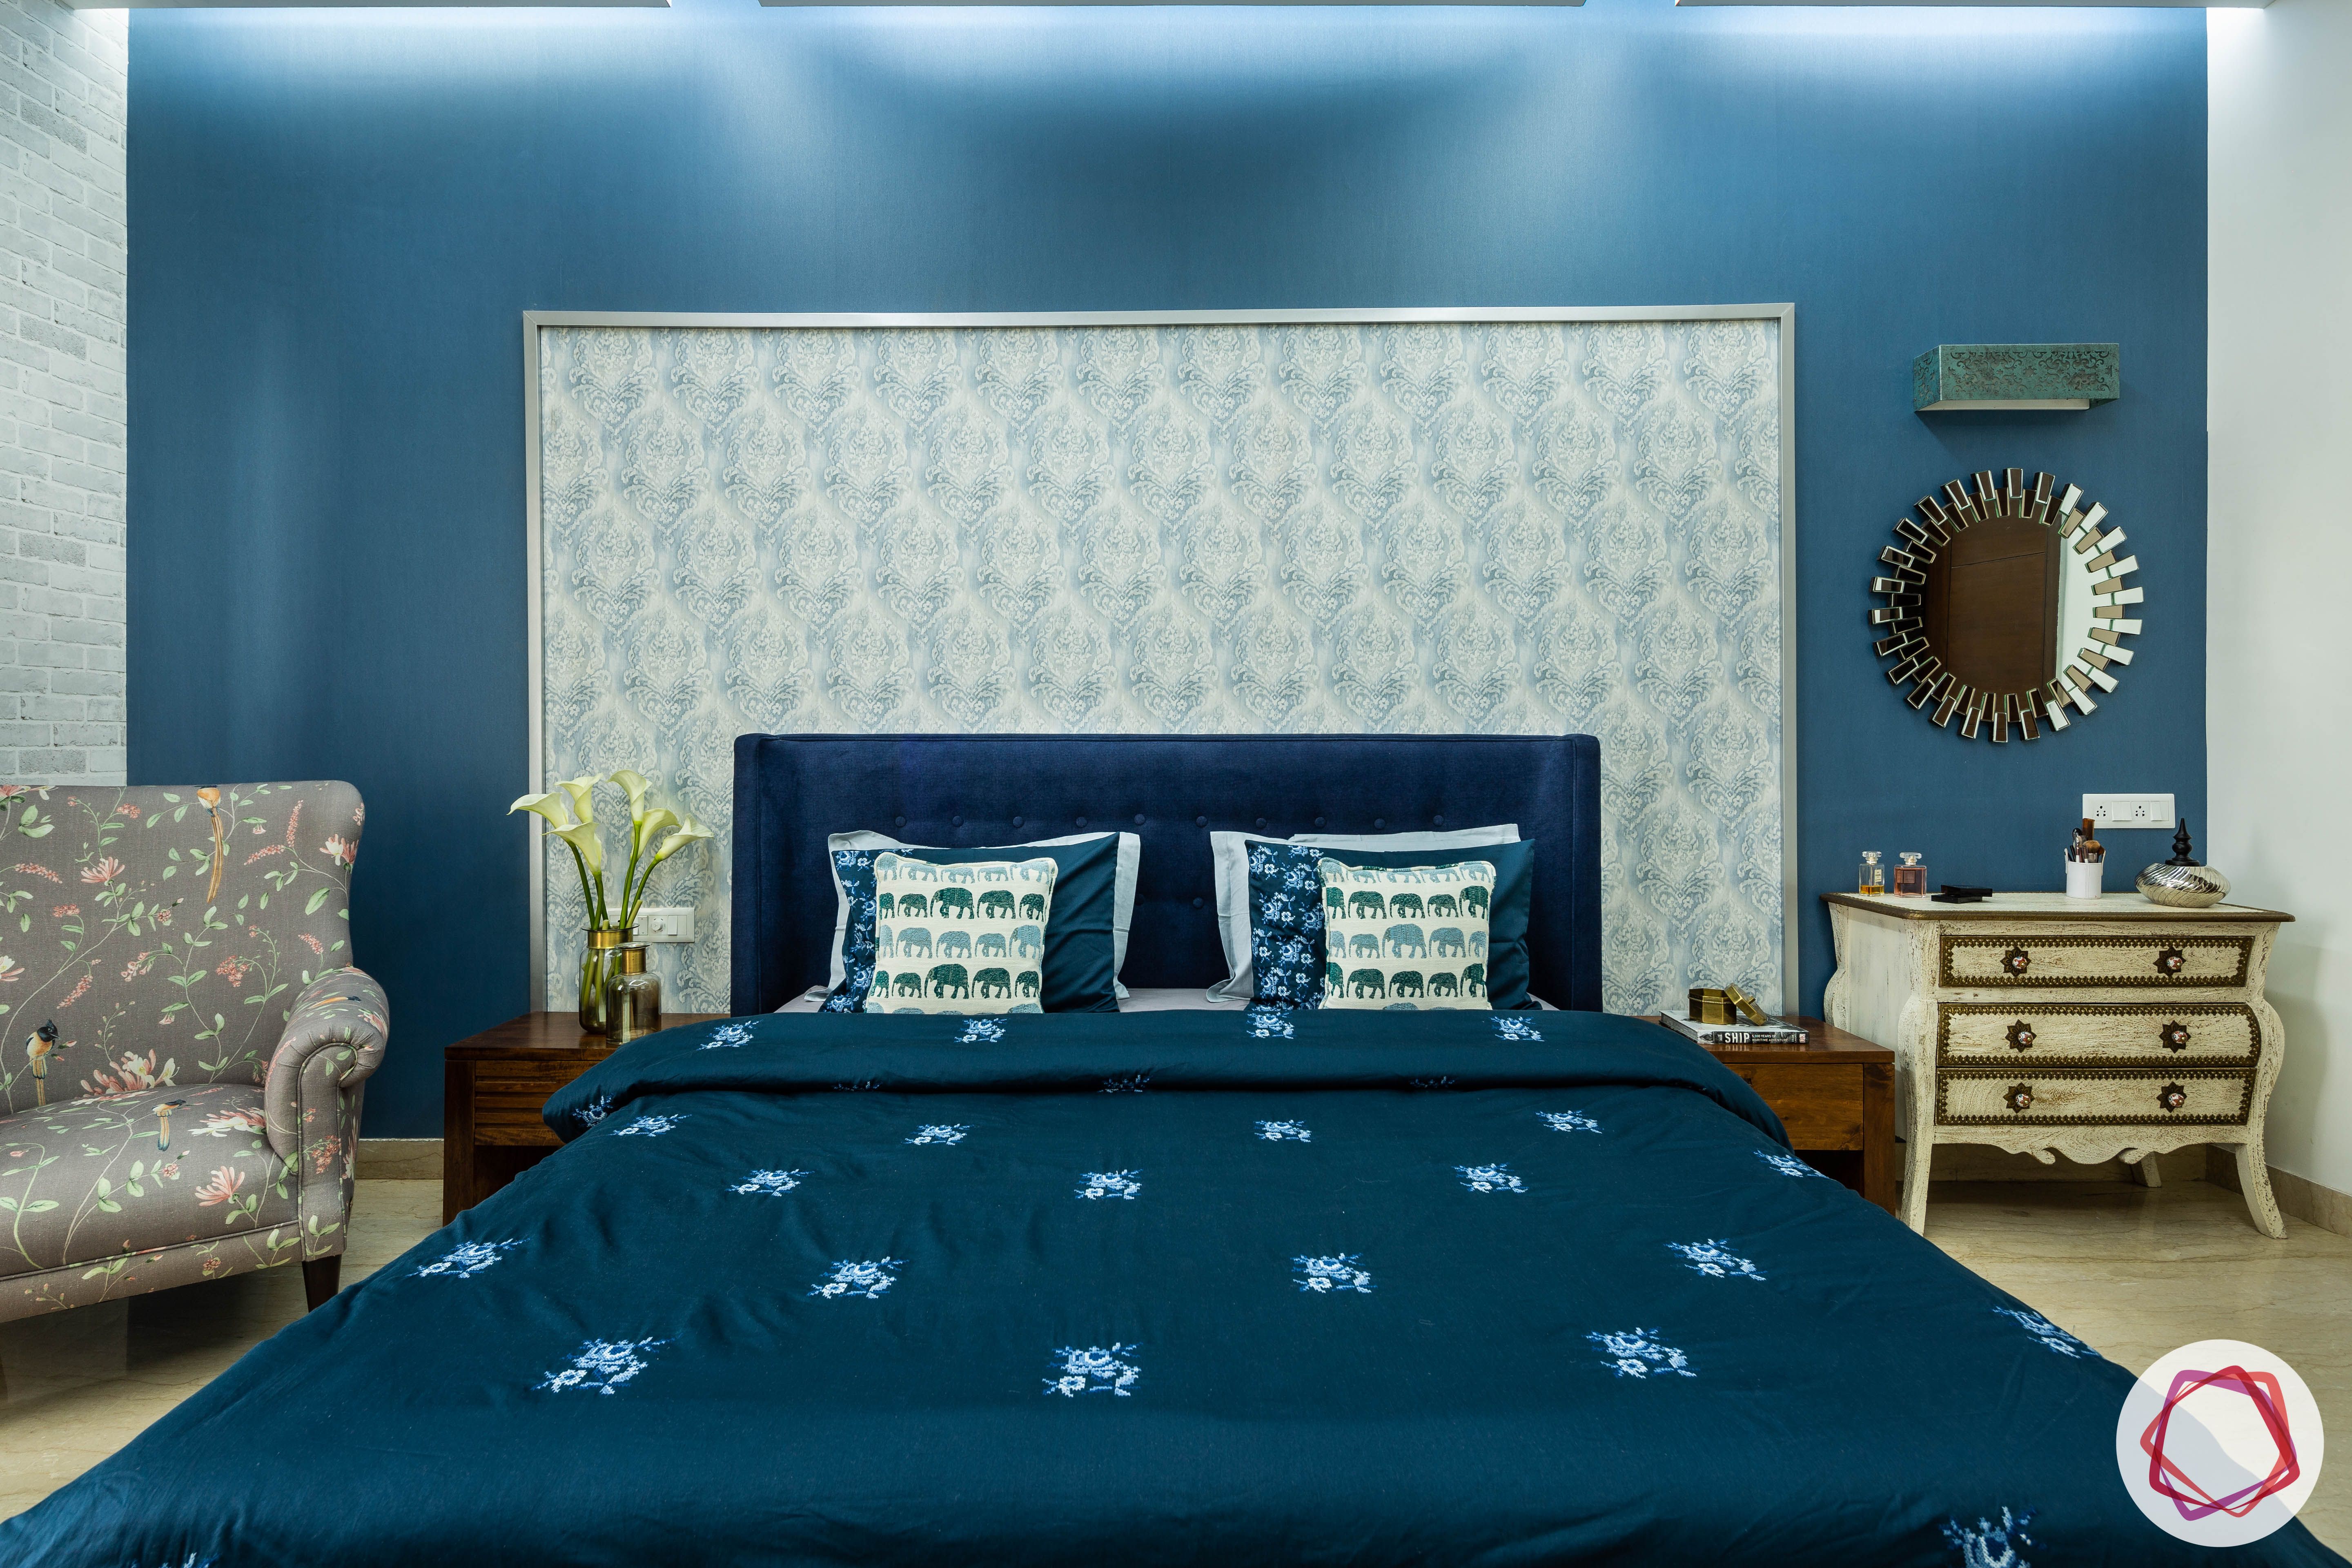 blue-wall-sheet-headboard-wallpaper-trims